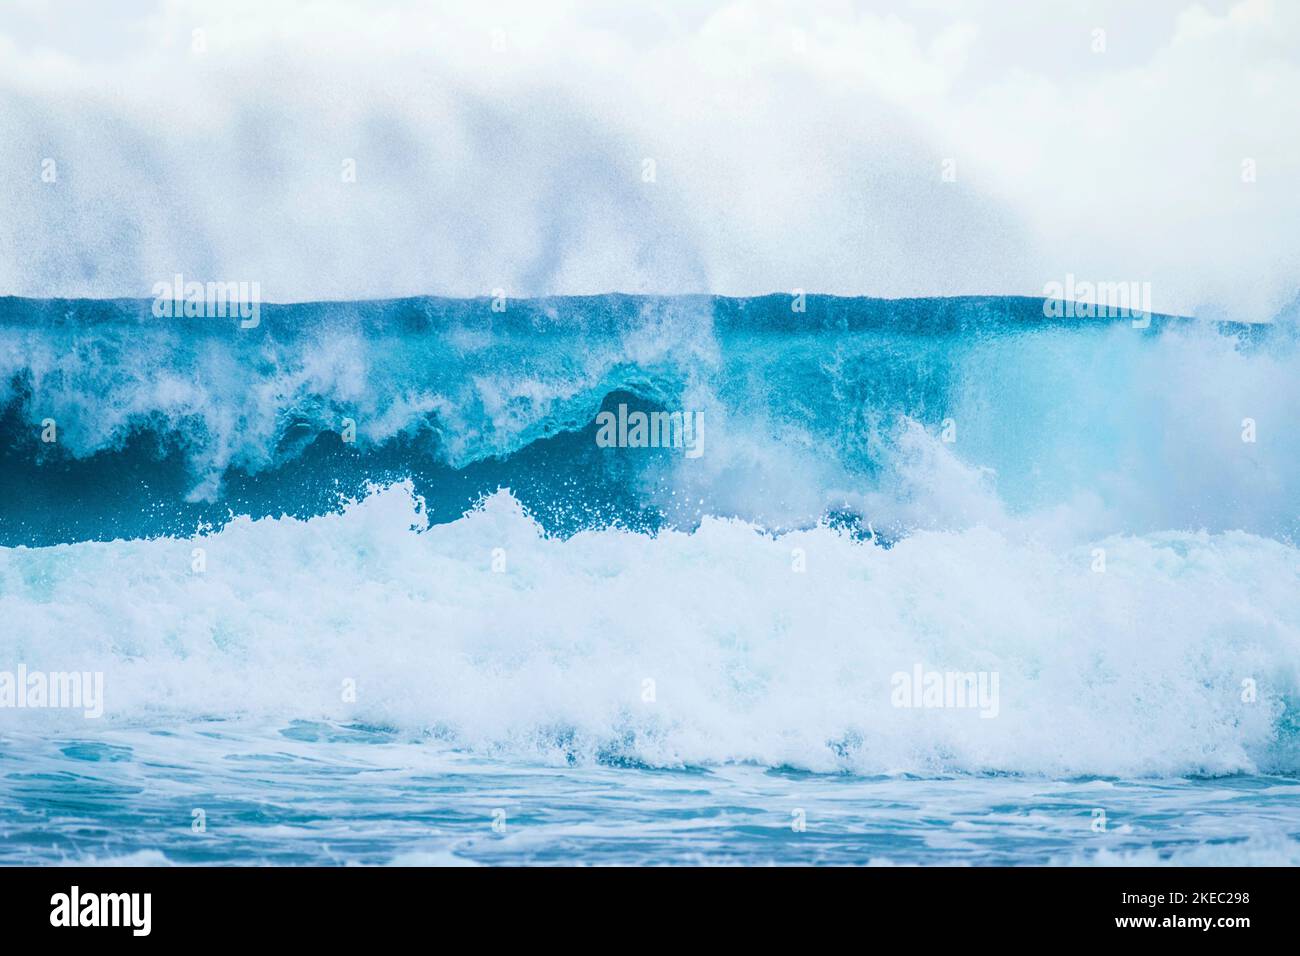 Eine wunderschöne und blaue Welle broking - Meer oder Ozean Strand - Surfen Zeit Lebensstil - Nahaufnahme und Porträt einer Welle Stockfoto